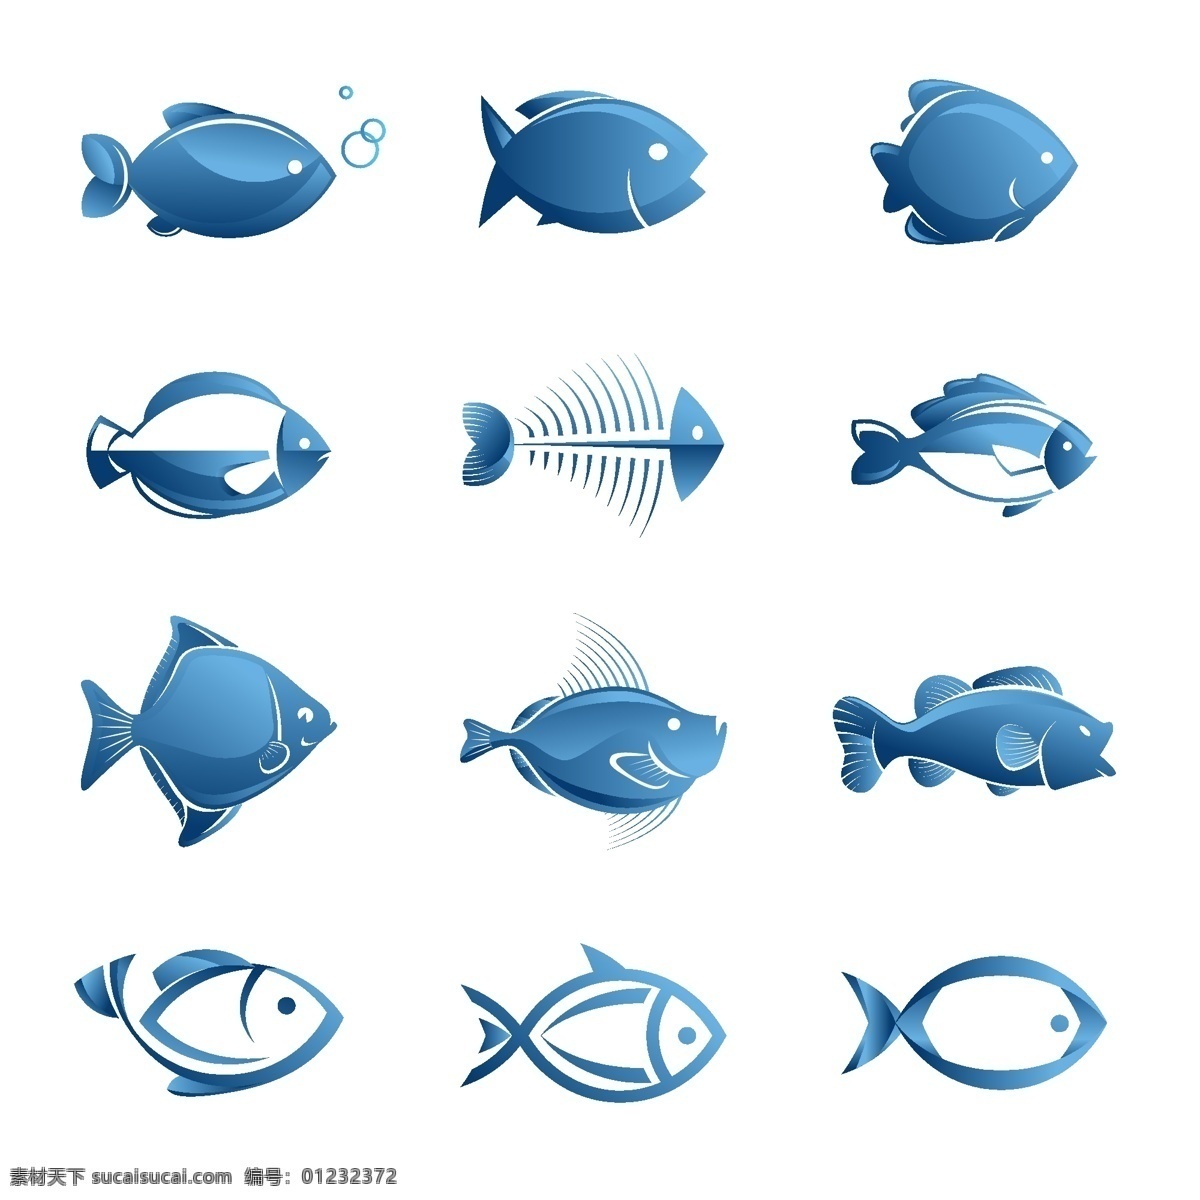 鱼图标 动物 鱼 鱼图形 手绘 创意鱼图案 logo标识 图标 矢量素材 标志图标 网页小图标